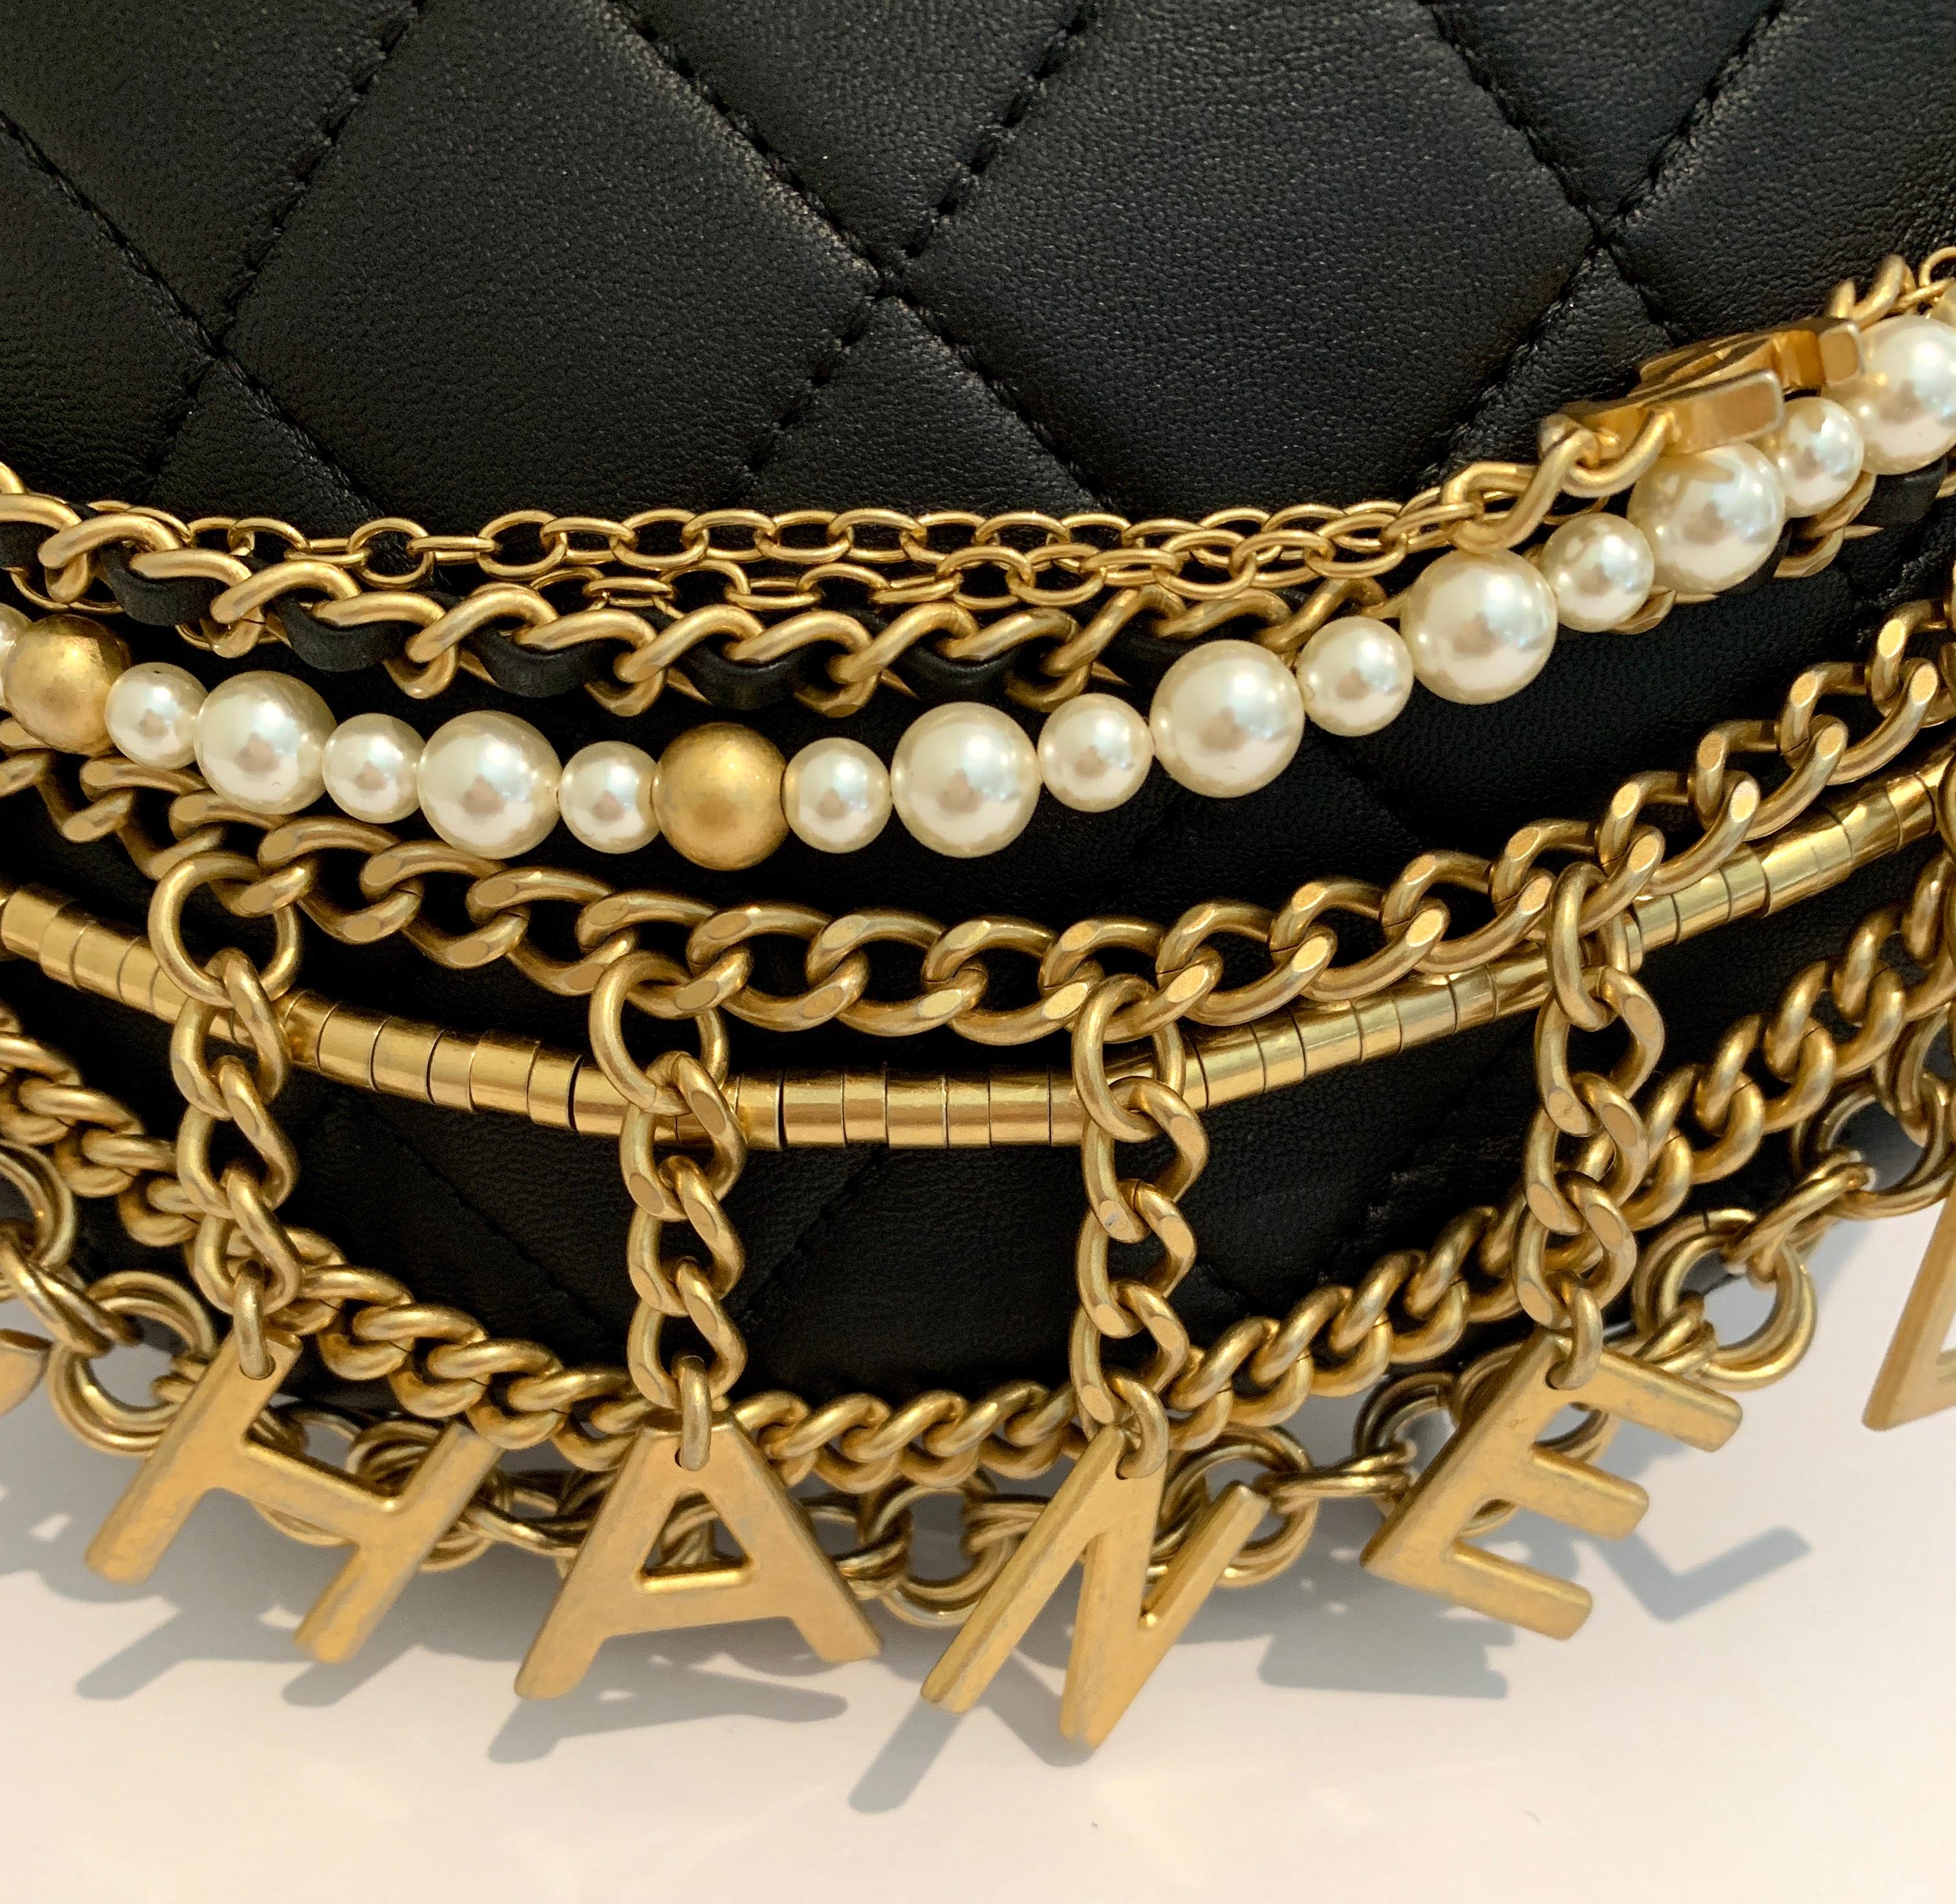 Black Chanel Waist Bum Bag Lambskin, Gold-Tone Pearls Chains